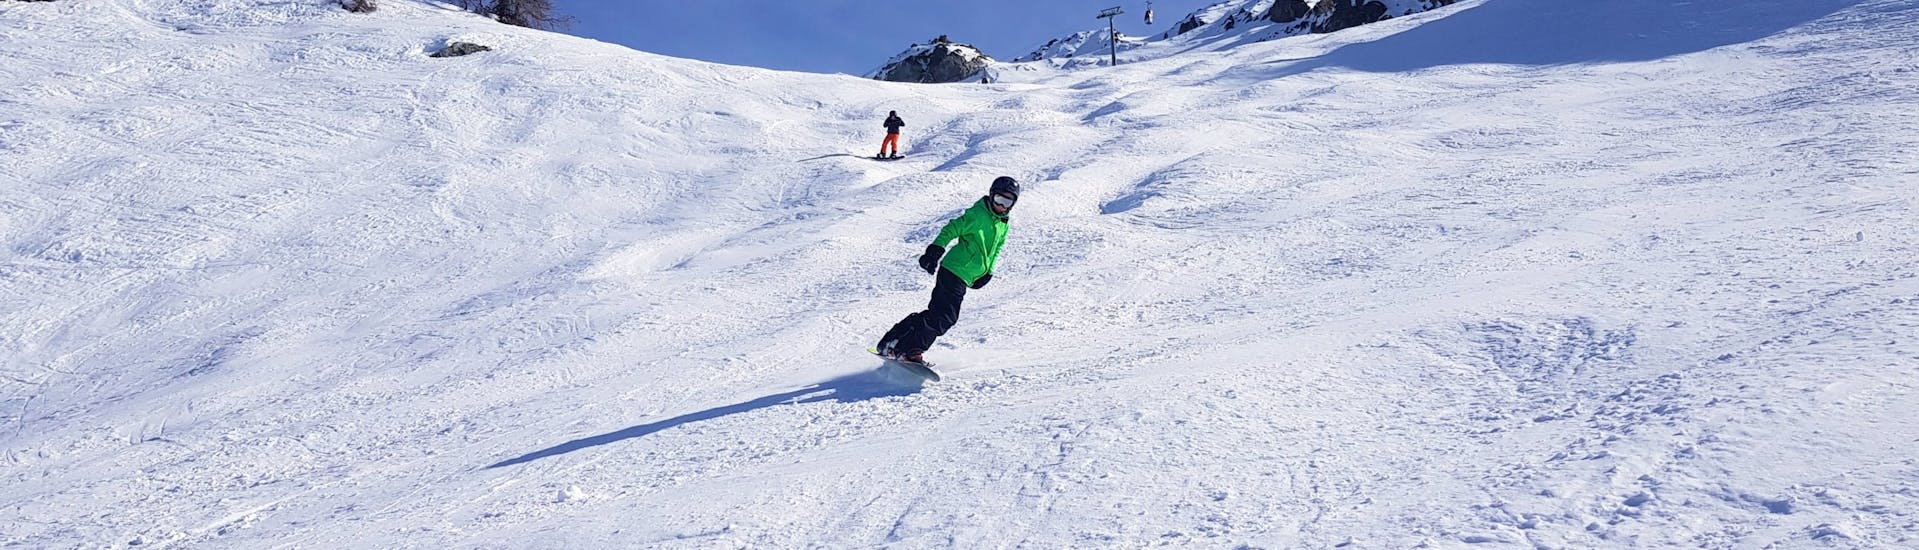 Un snowboarder descend une pente pendant son Cours particulier de snowboard avec Evolution 2 Peisy Vallandry.